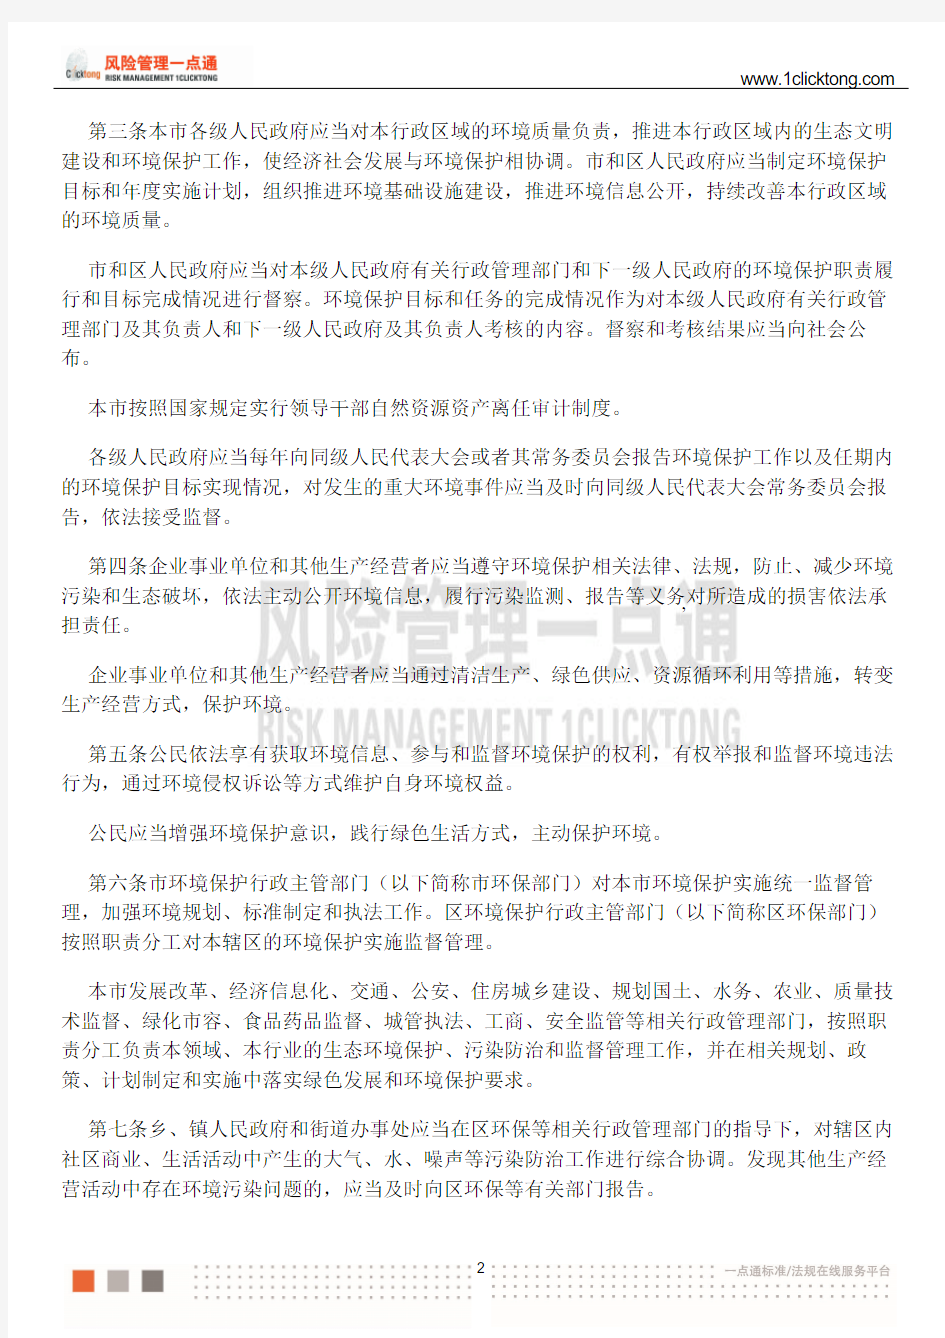 上海市环境保护条例(2017年修正)